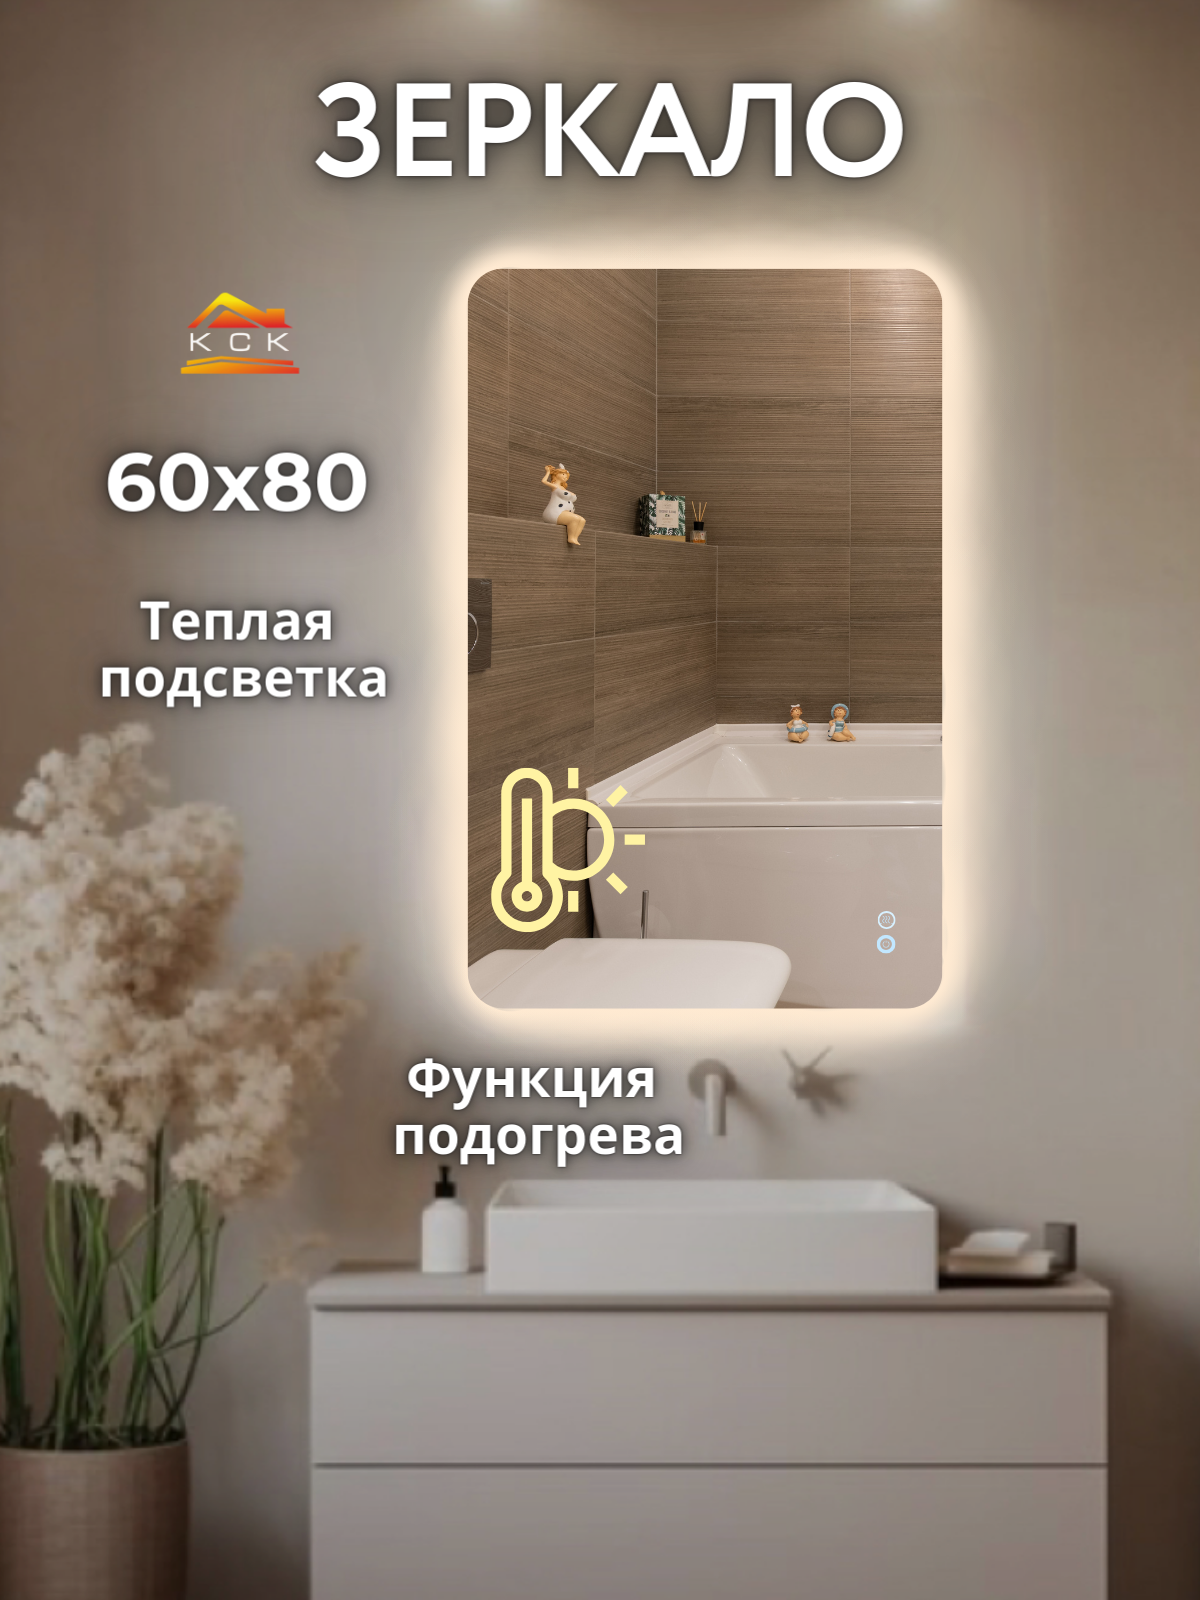 Зеркало с подогревом для ванной и подсветкой 60 на 80 см.